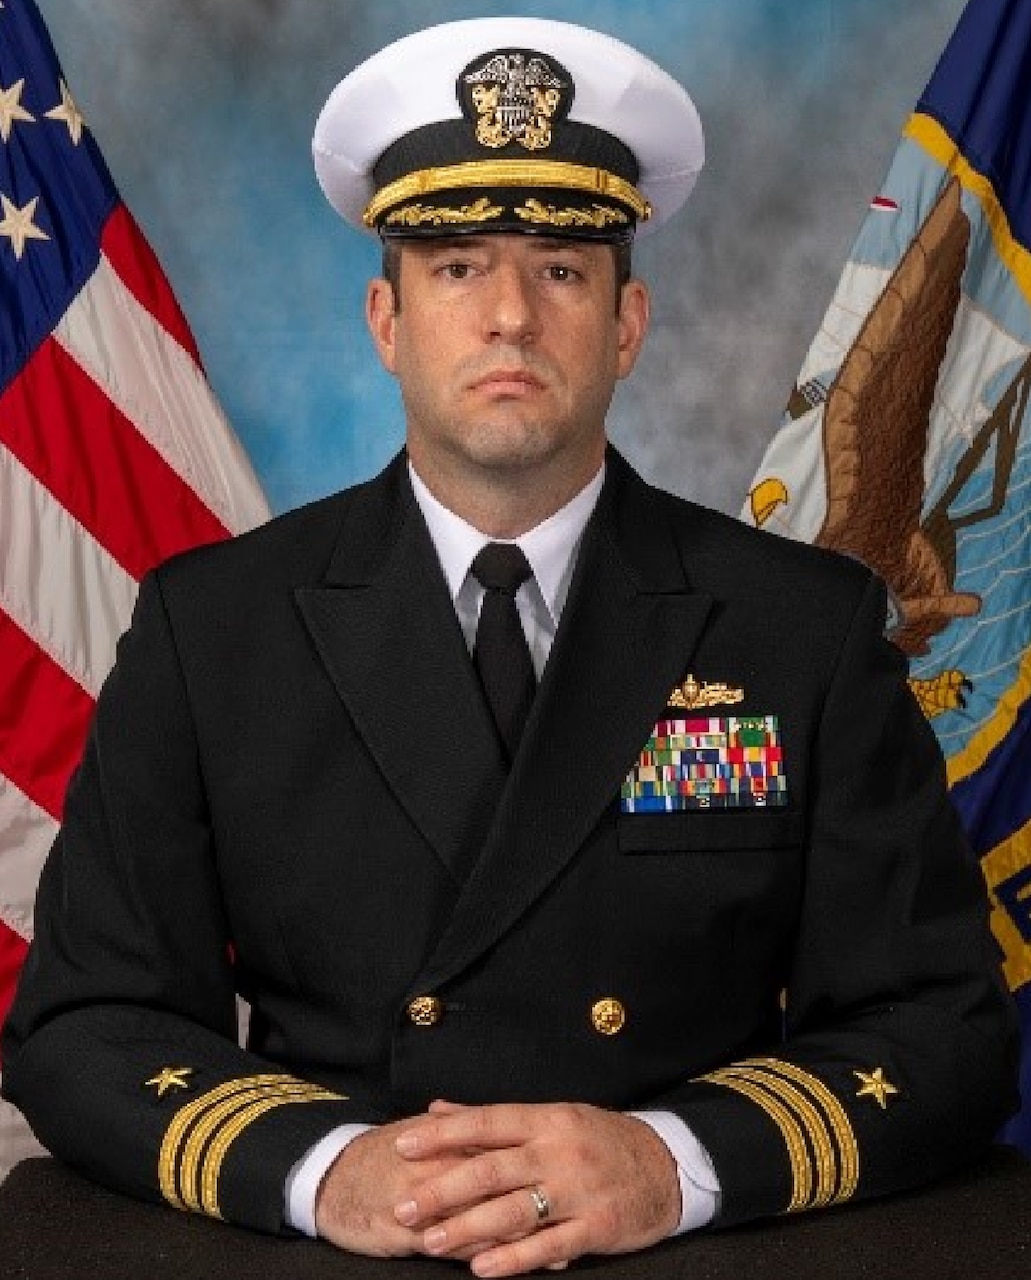 Commander Michael Beer